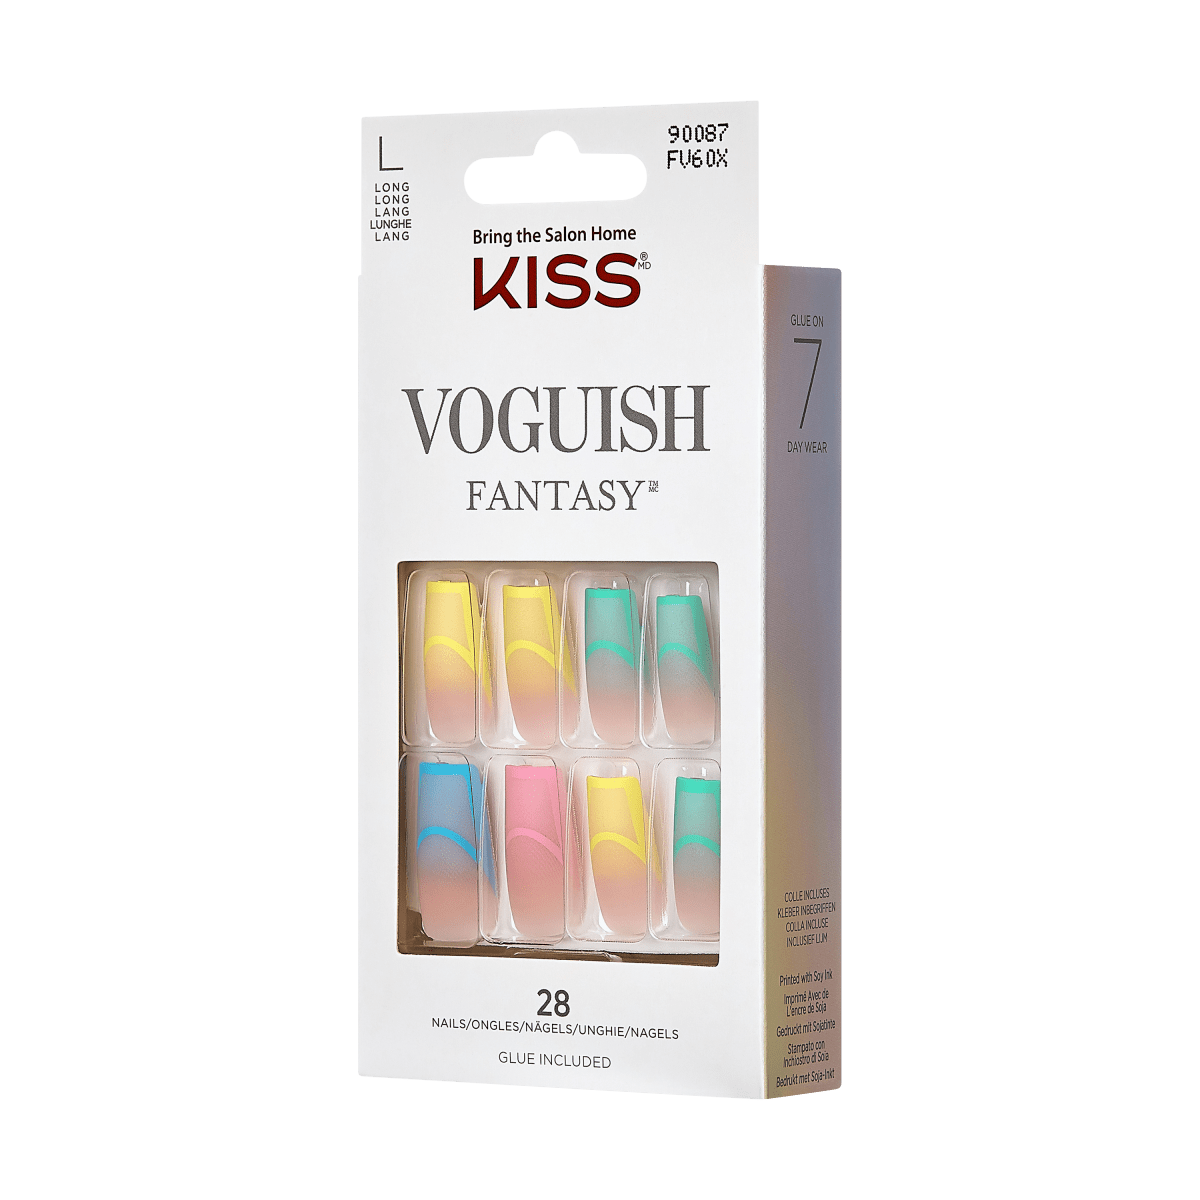 KISS Voguish Fantasy Nails- Hammock